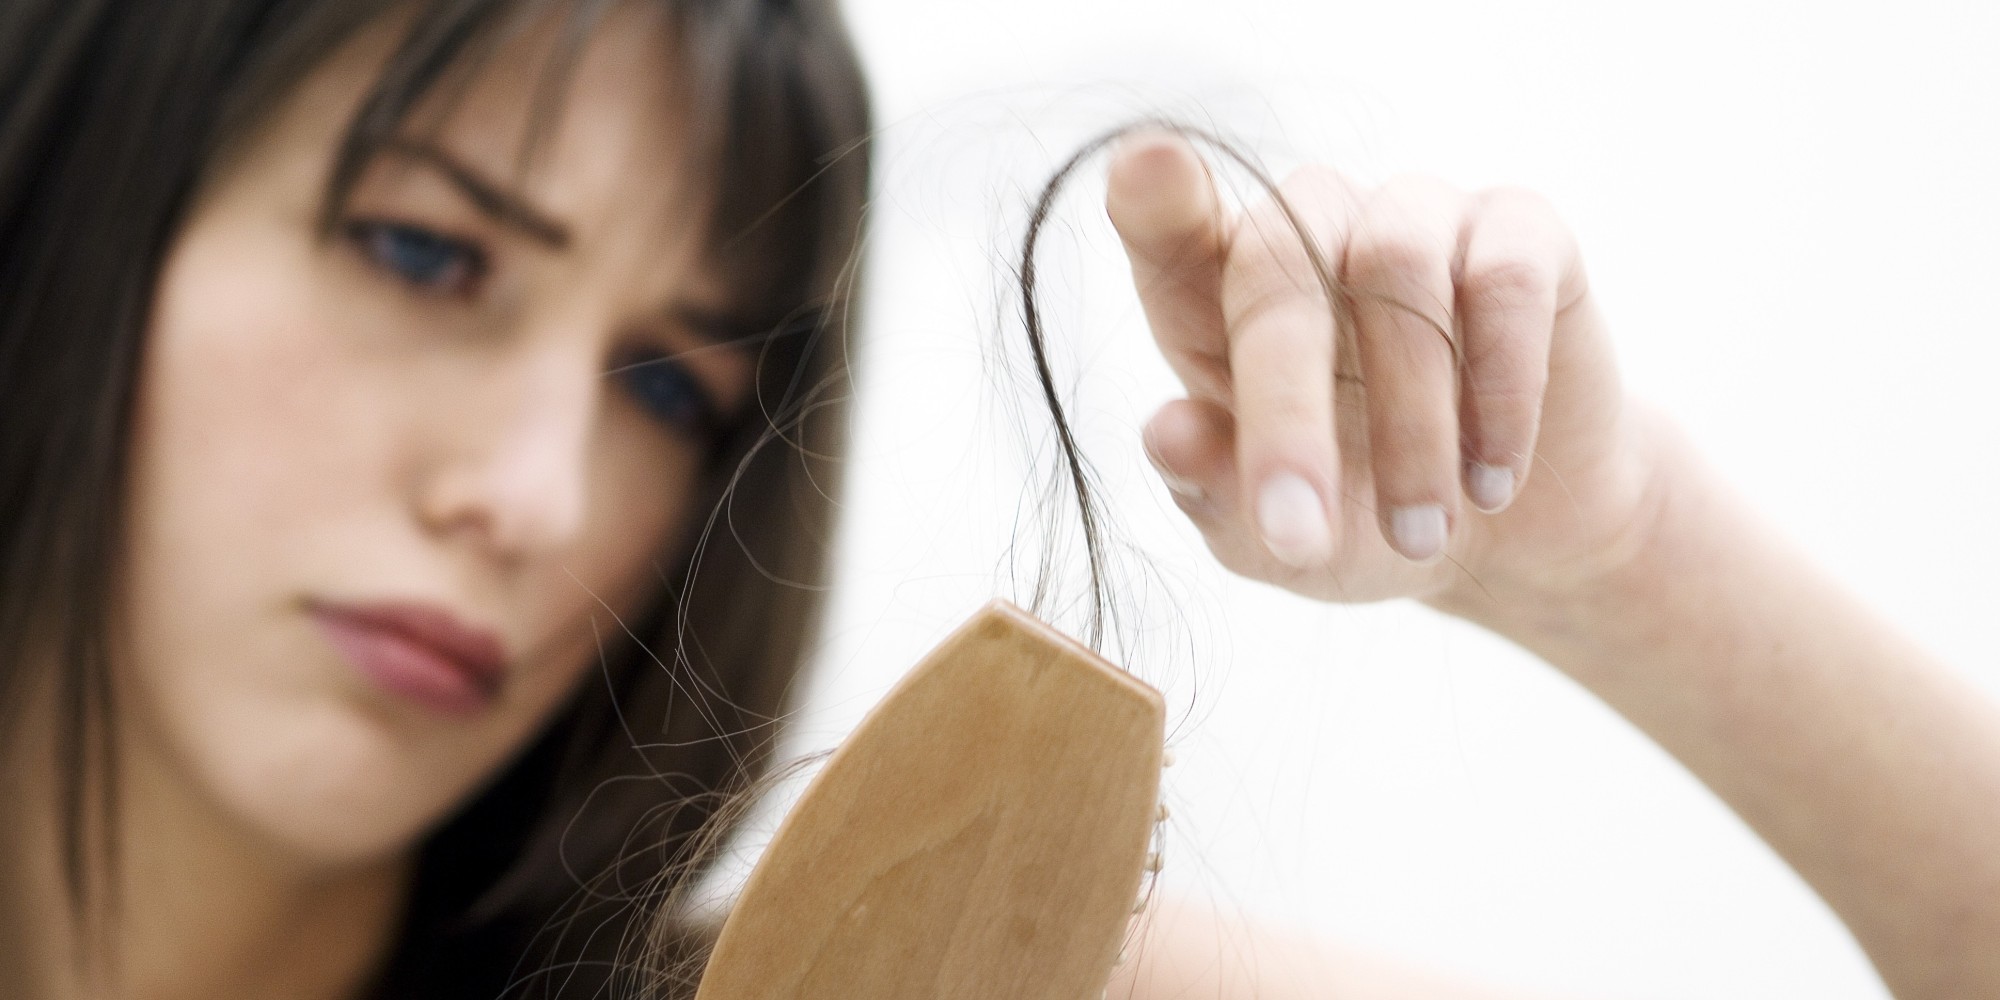  وصفة مضمونة لمنع تساقط الشعر